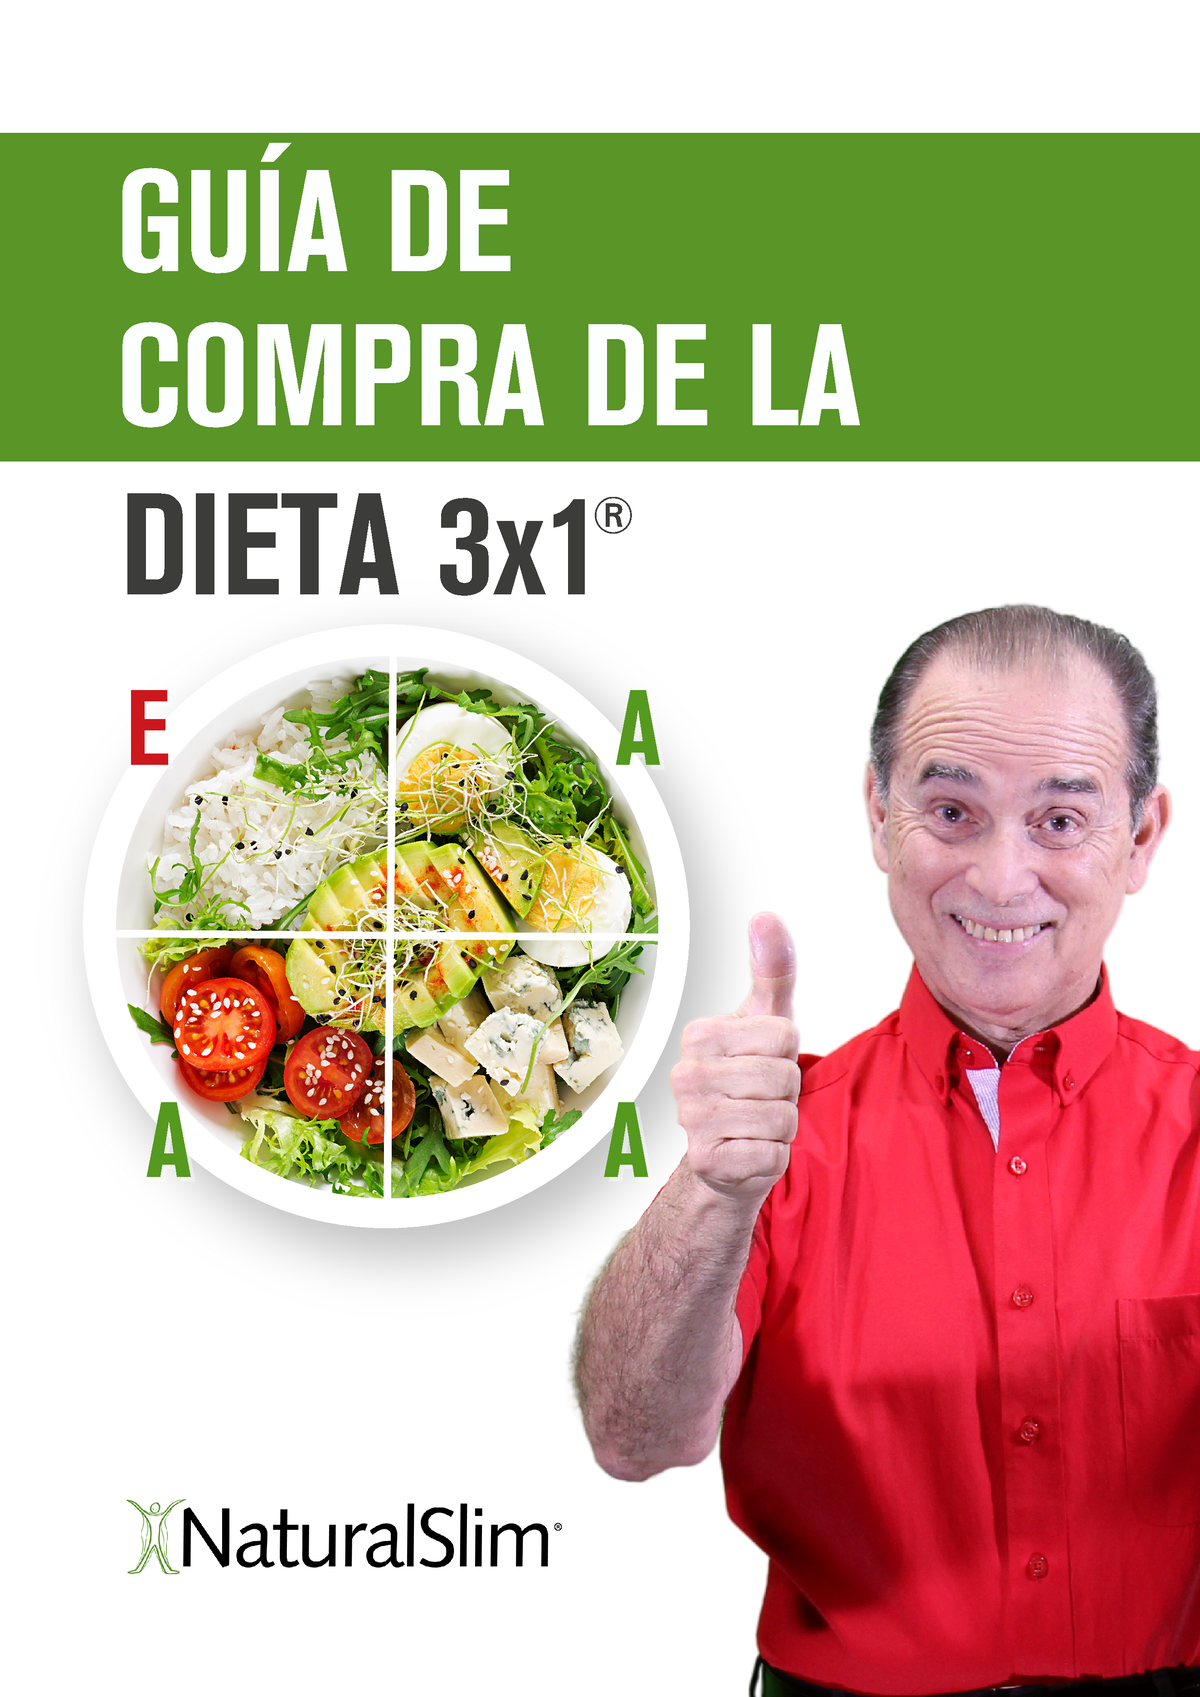 GUÍA- Dieta 3x1 - ALIMENTOS TIPO A Y TIPO E - GUÍA DE COMPRA DE LA DIETA 3x  E E A A A A A A ® - Studocu